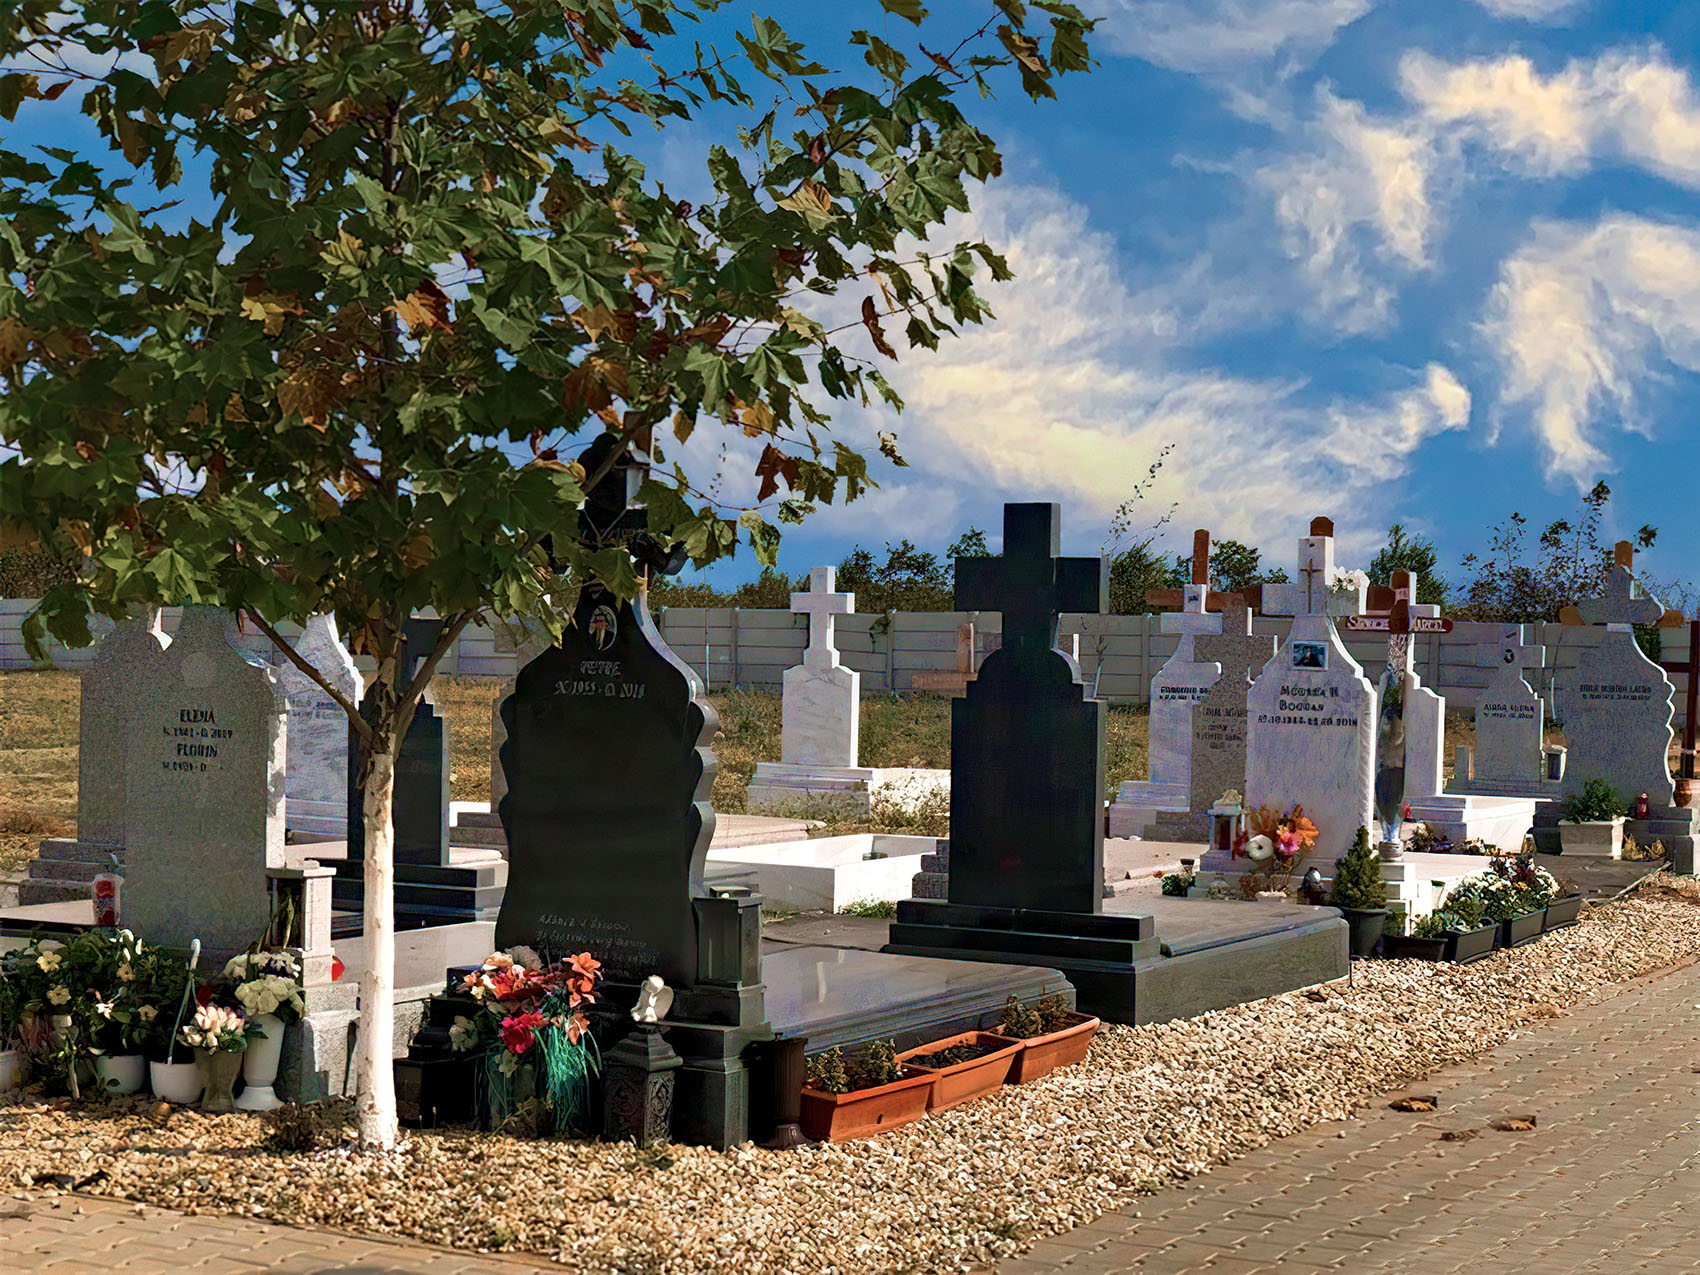 Pe cont propriu sau cu ajutorul unei agenții funerare: cum să organizezi o ceremonie de înmormântare?